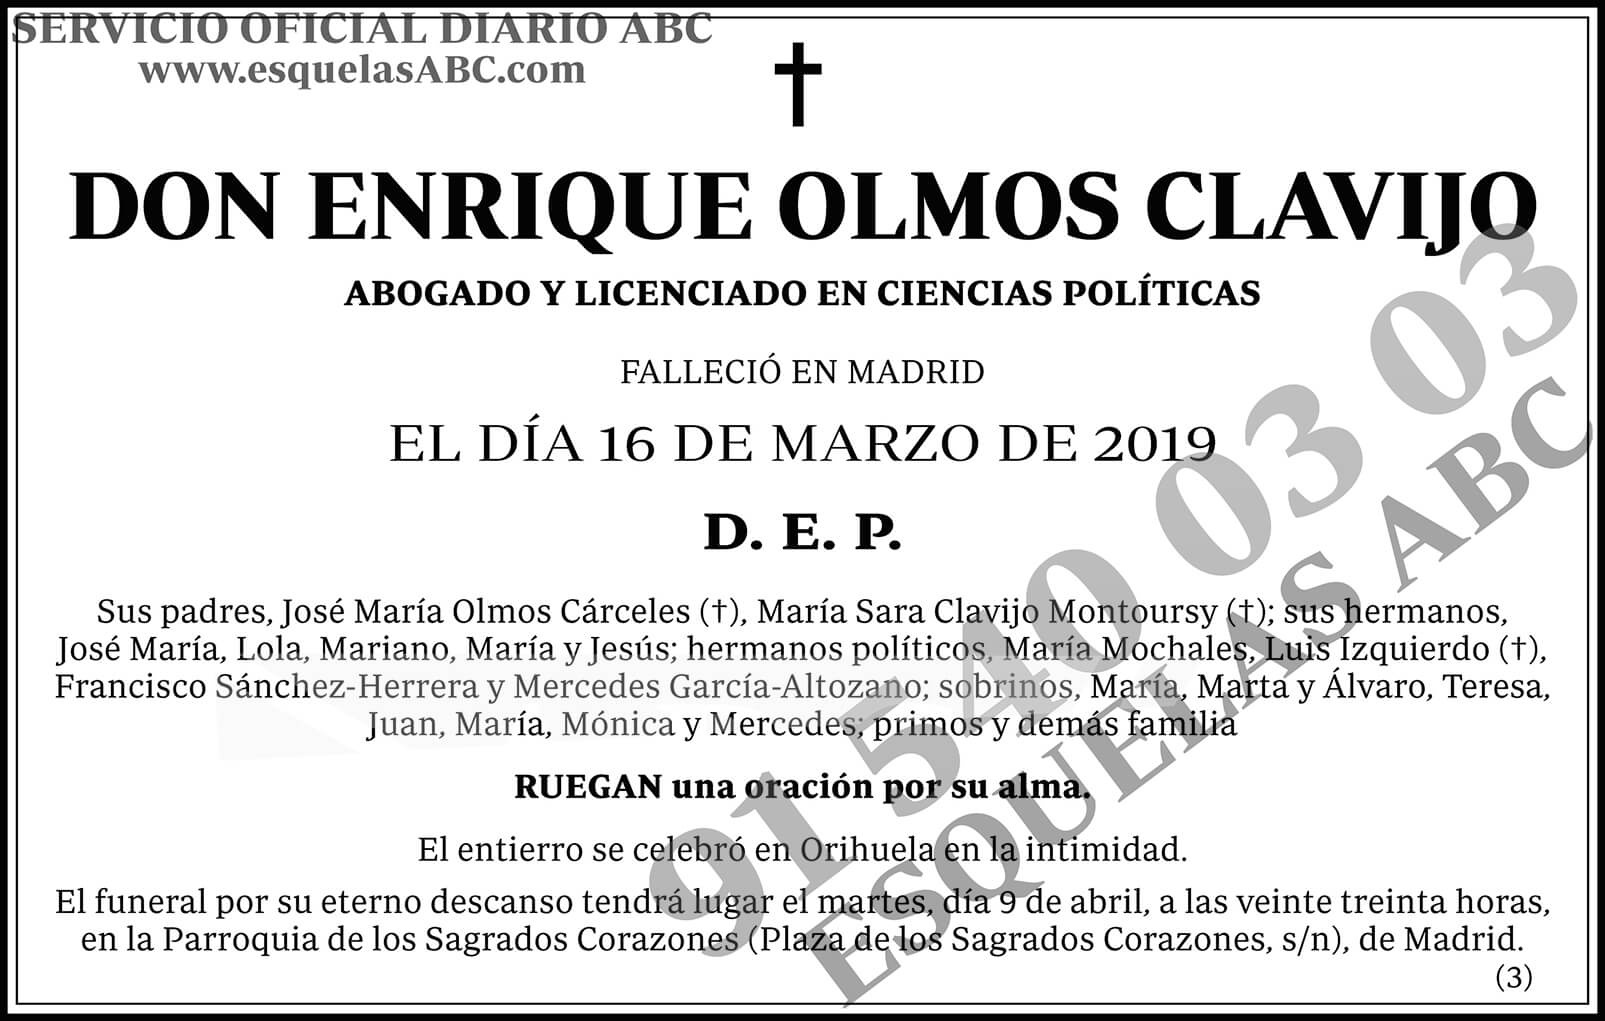 Enrique Olmos Clavijo